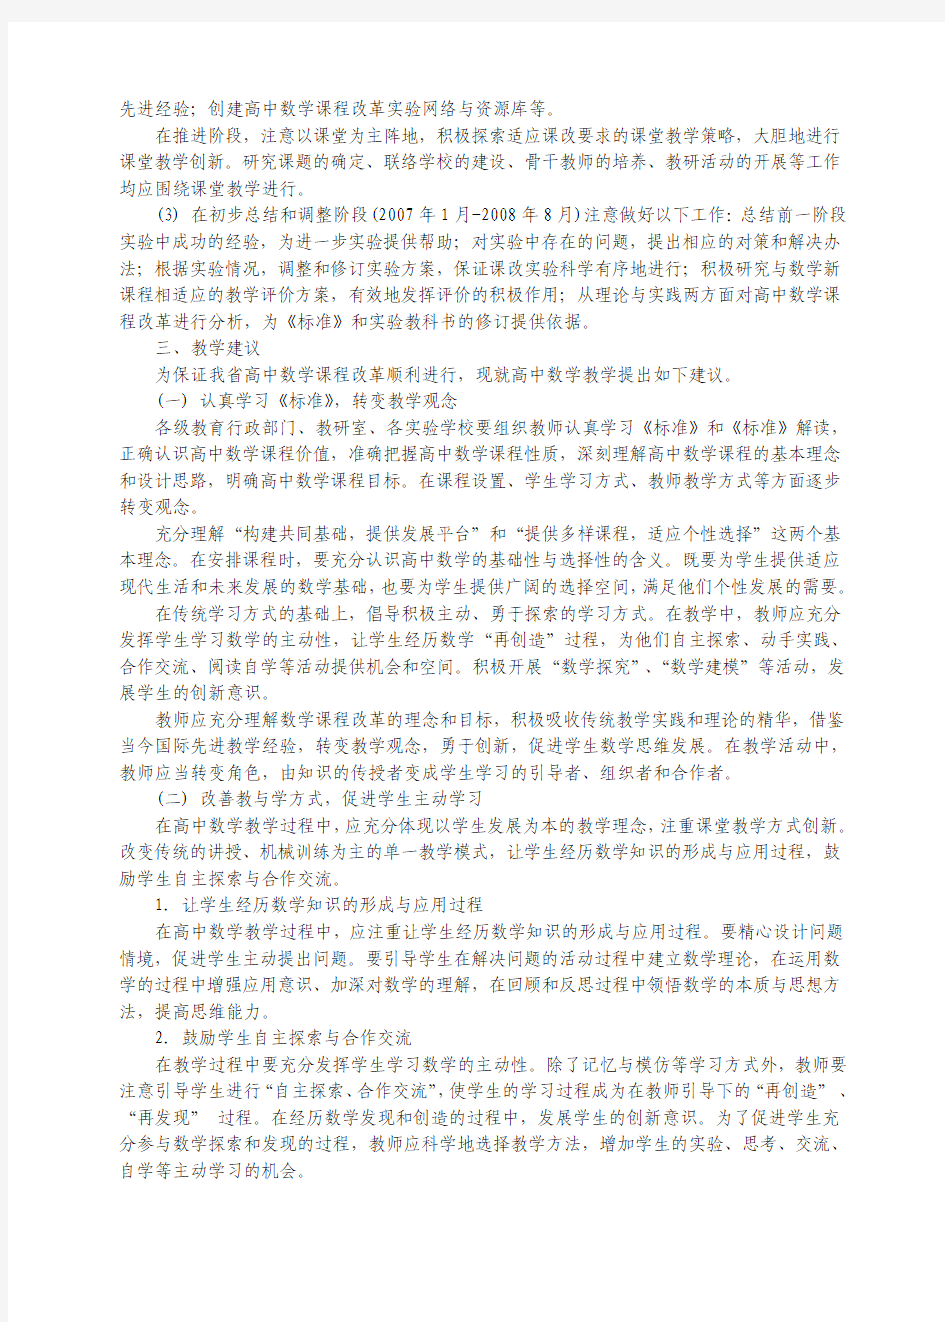 江苏省普通高中数学课程改革实施指导意见(试行)